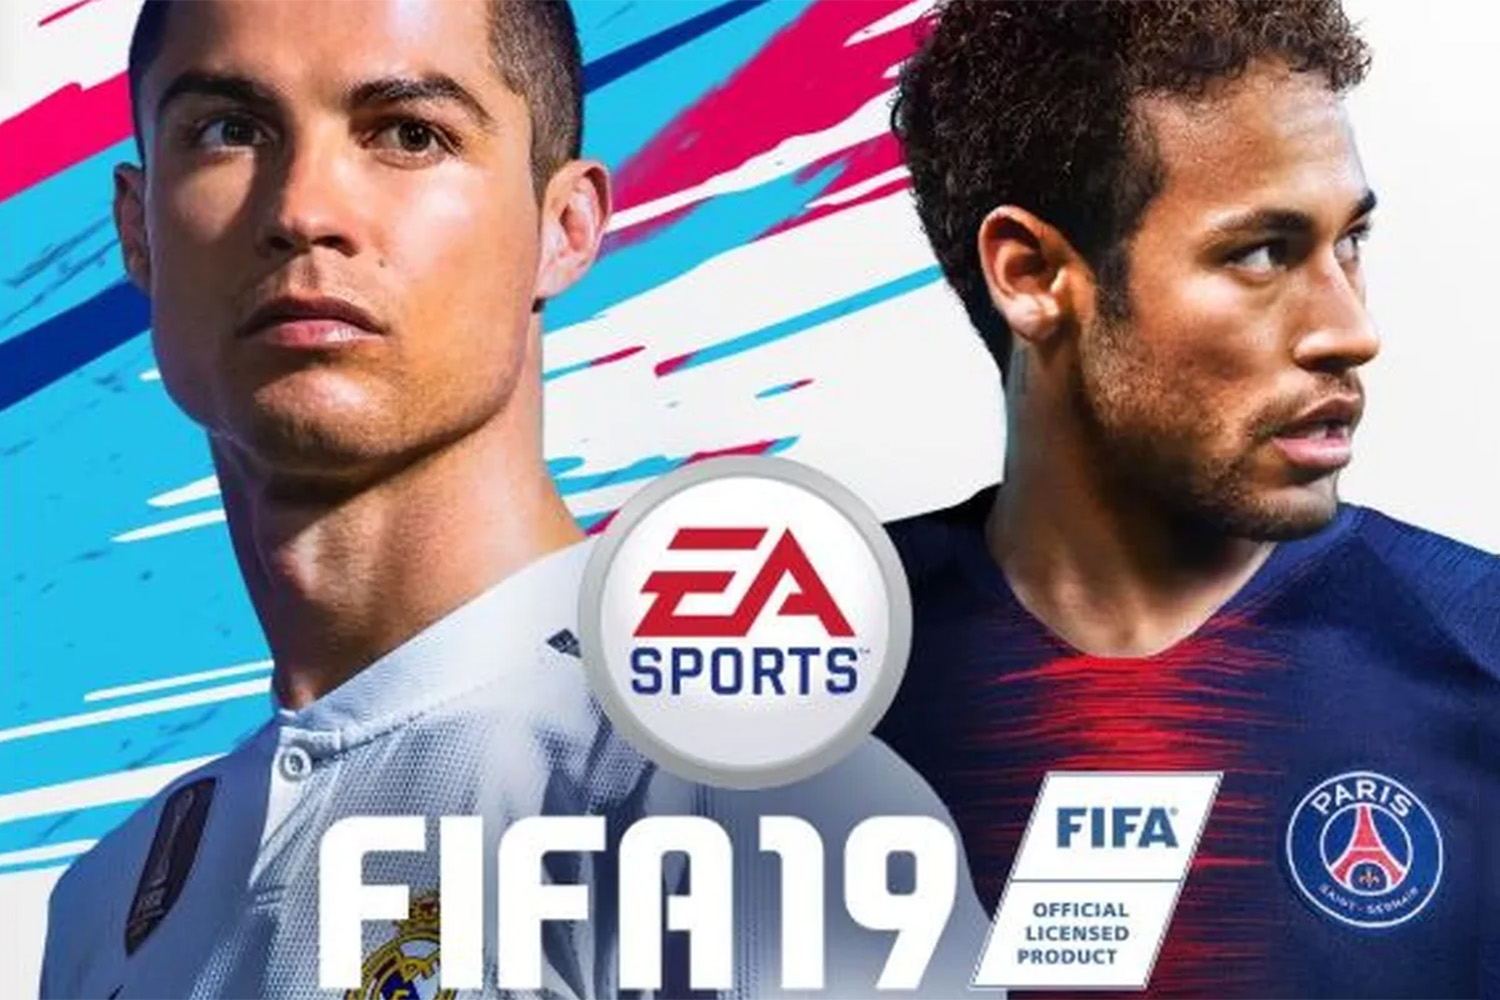 Games: EA divulga notas do Fifa 19 com Neymar no top 3